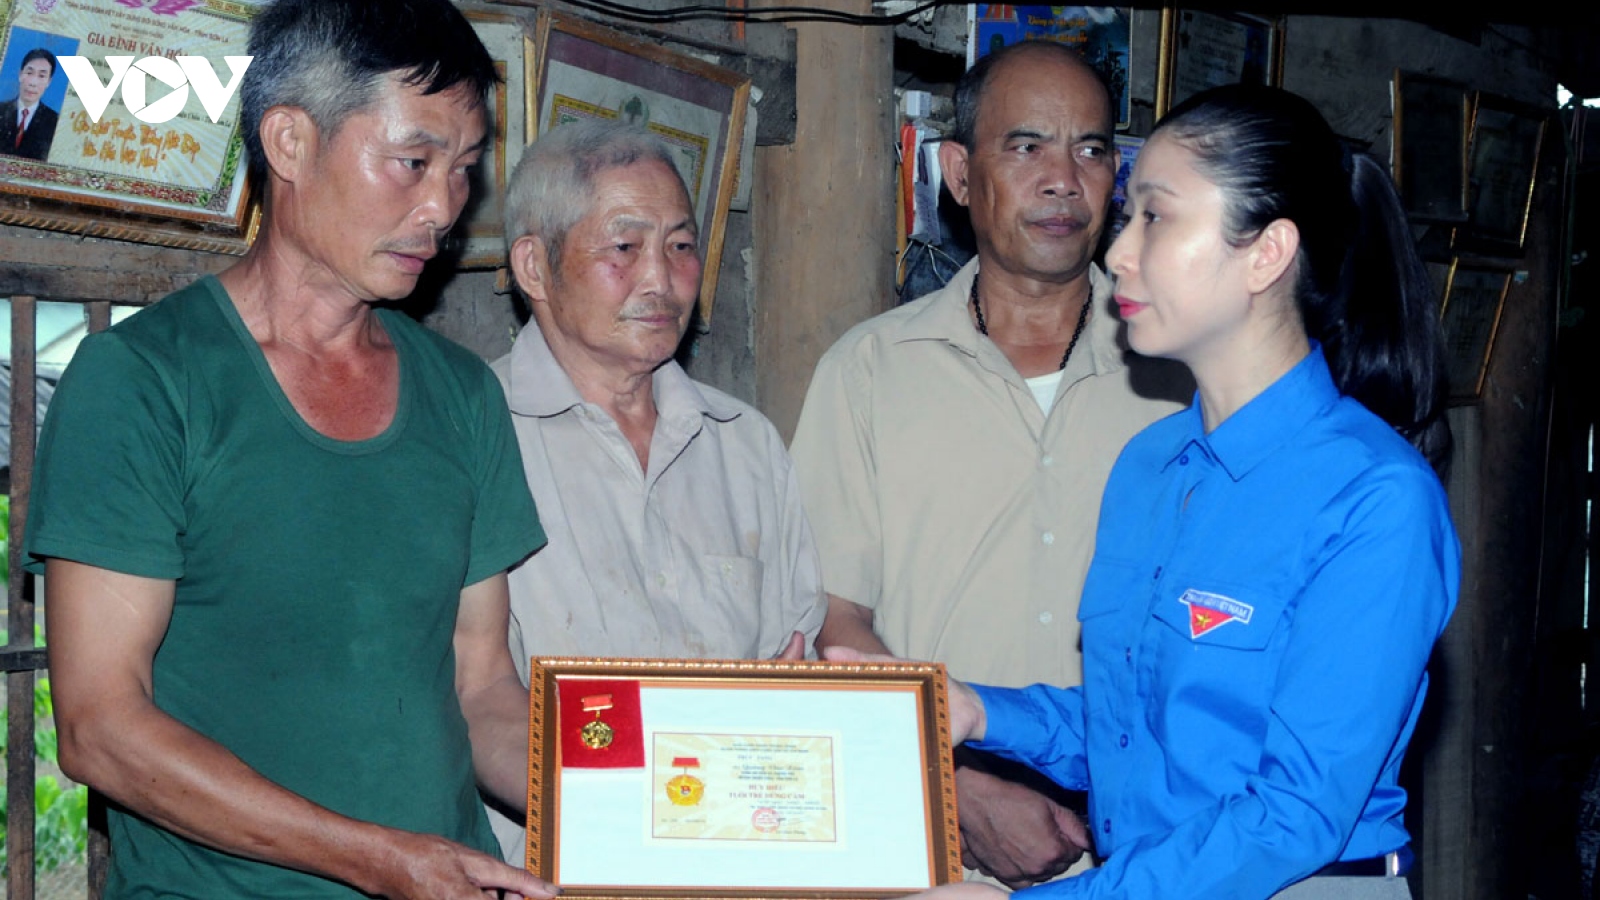 Truy tặng huy hiệu “Tuổi trẻ dũng cảm” cho công an viên hy sinh khi  thực hiện nhiệm vụ 